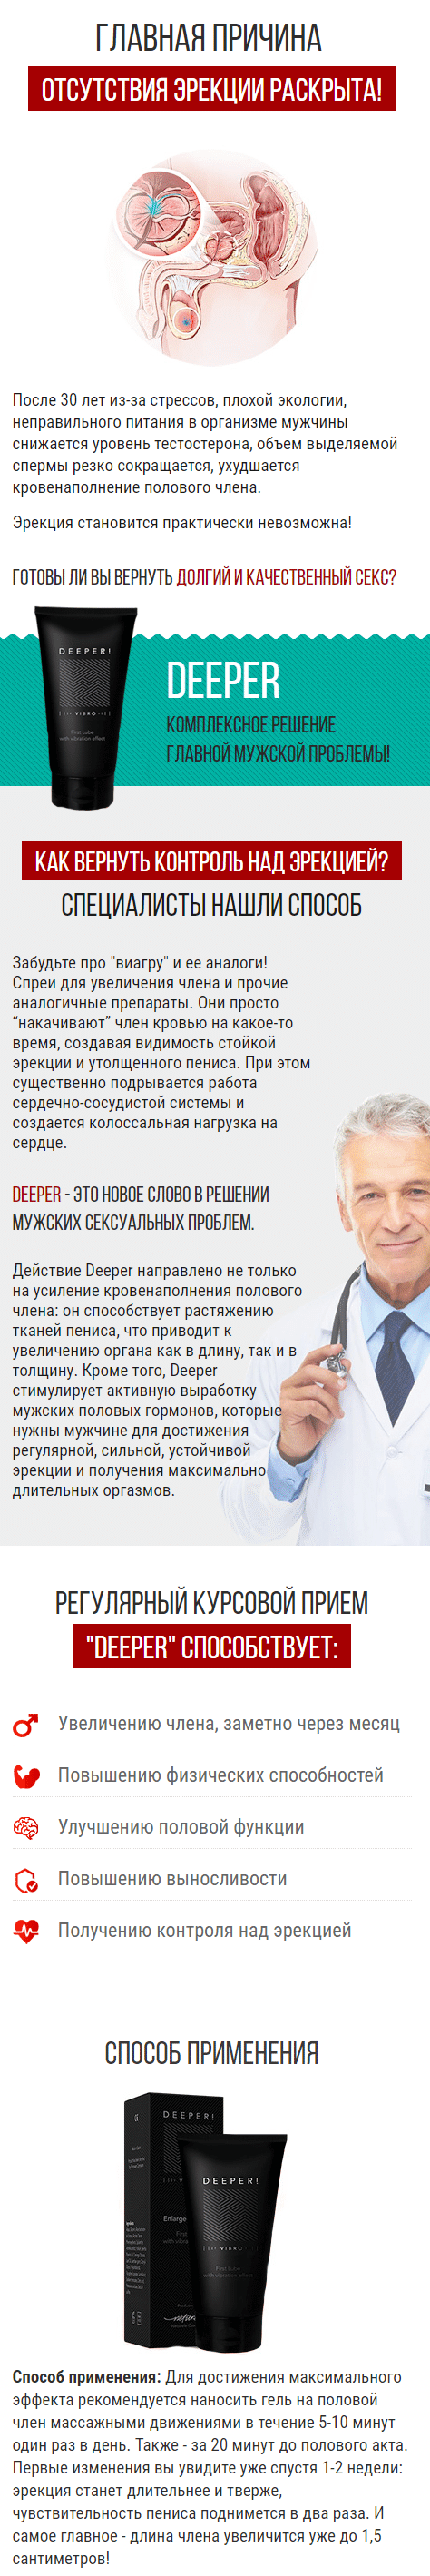 Deeper - крем для увеличения члена с вибро эффектом купить в Москве на  PromPortal.Su (ID#43932365)